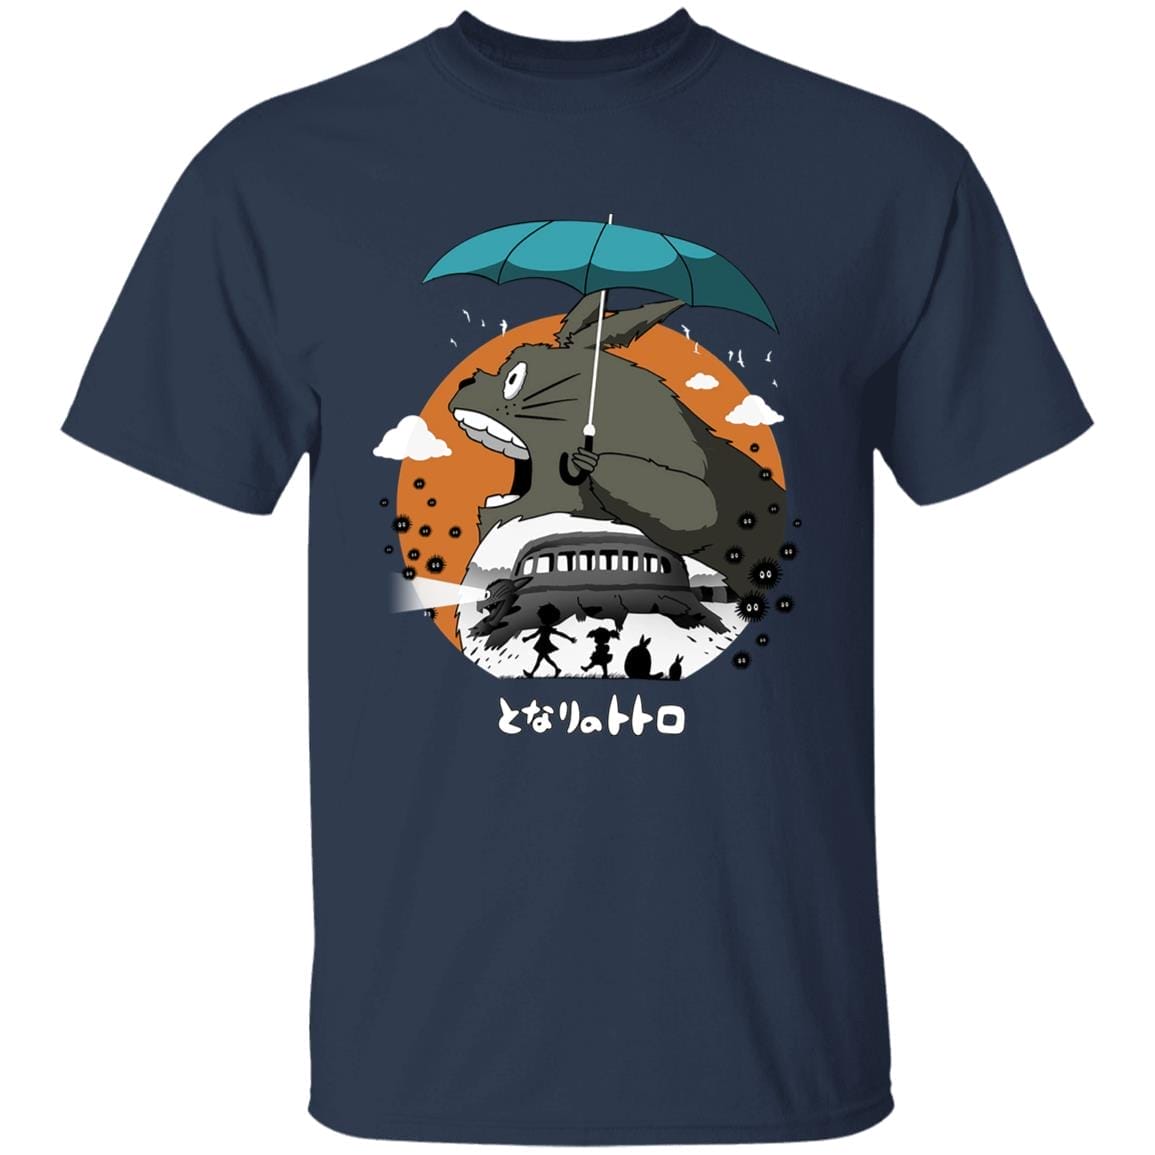 Totoro’s Journey T Shirt